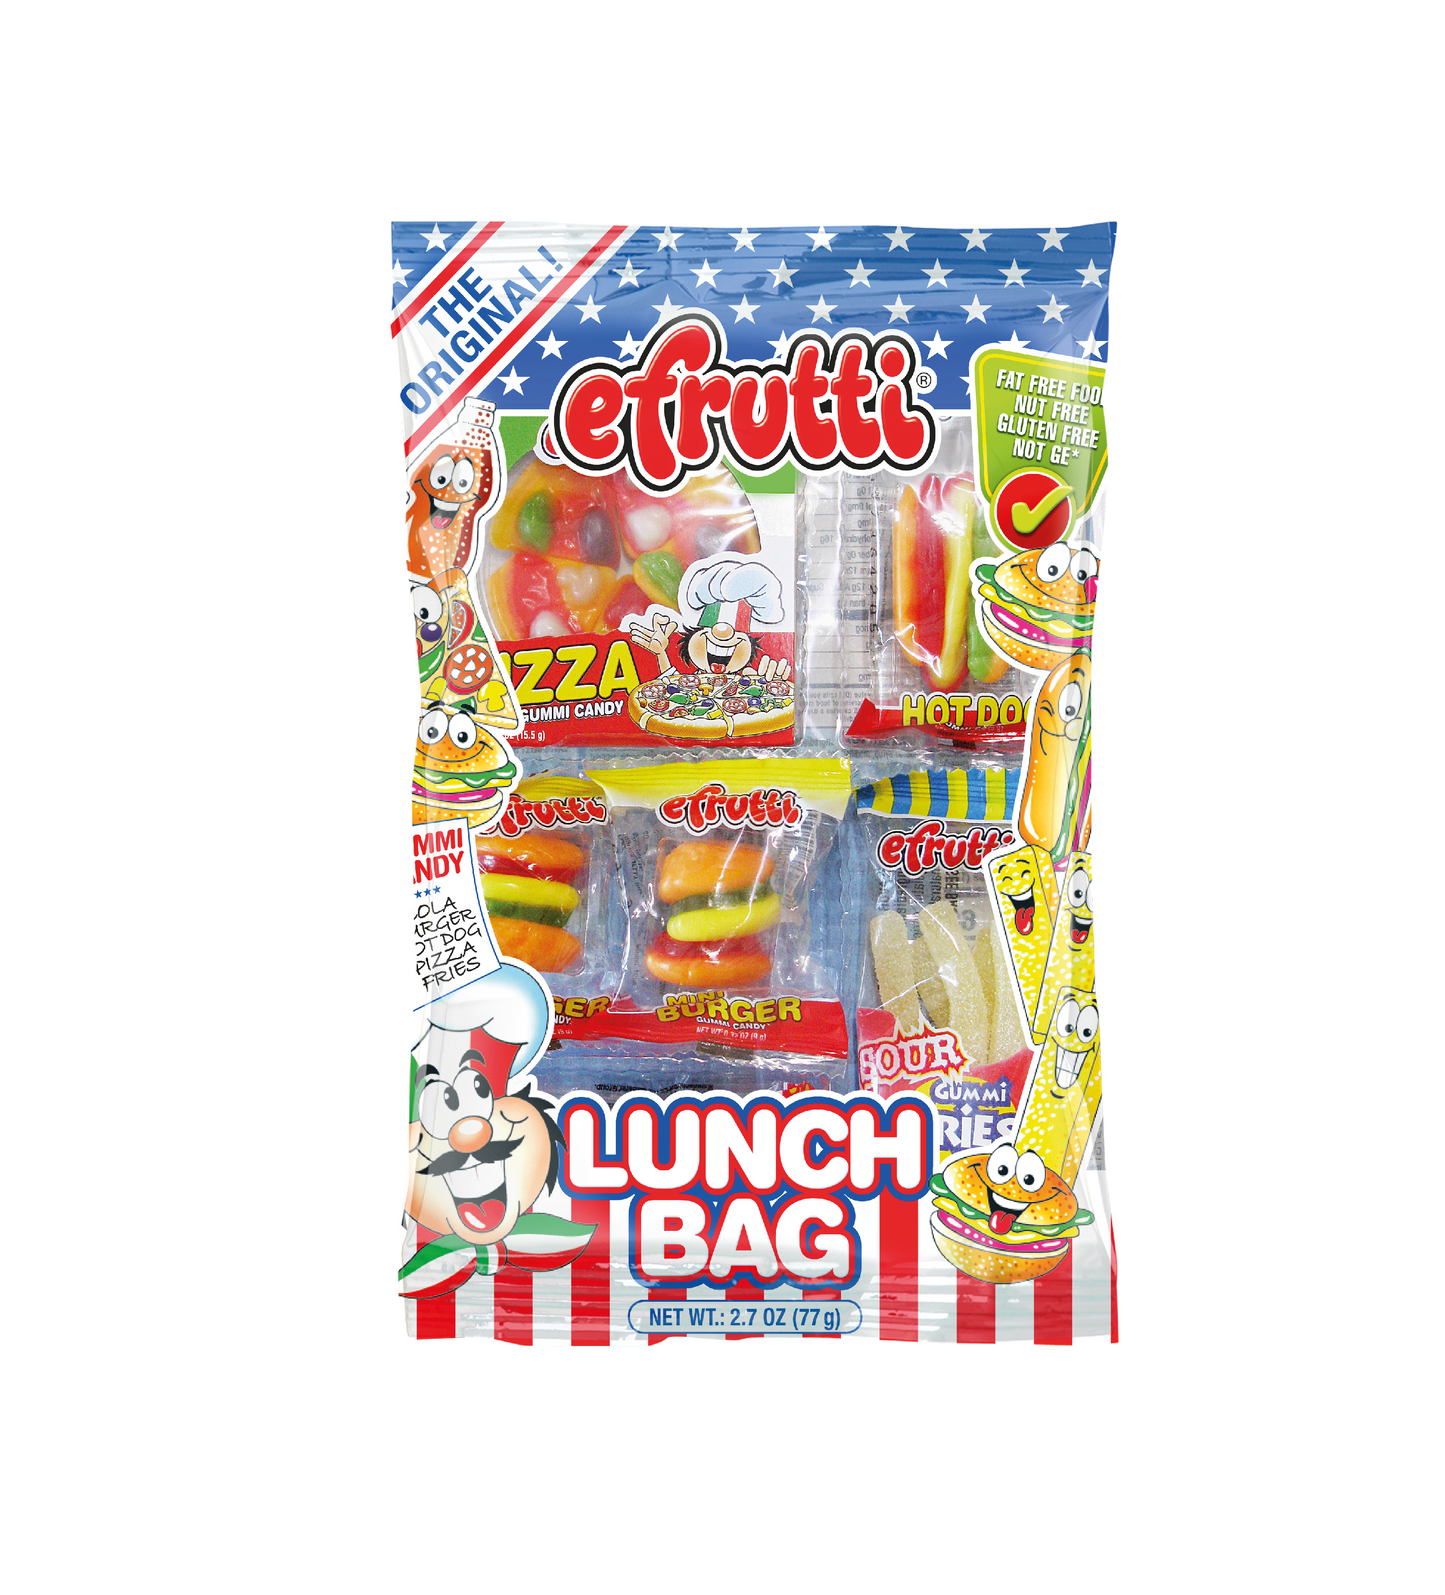 eFrutti Gummi Candy Lunch Bag 2.7oz (77g)